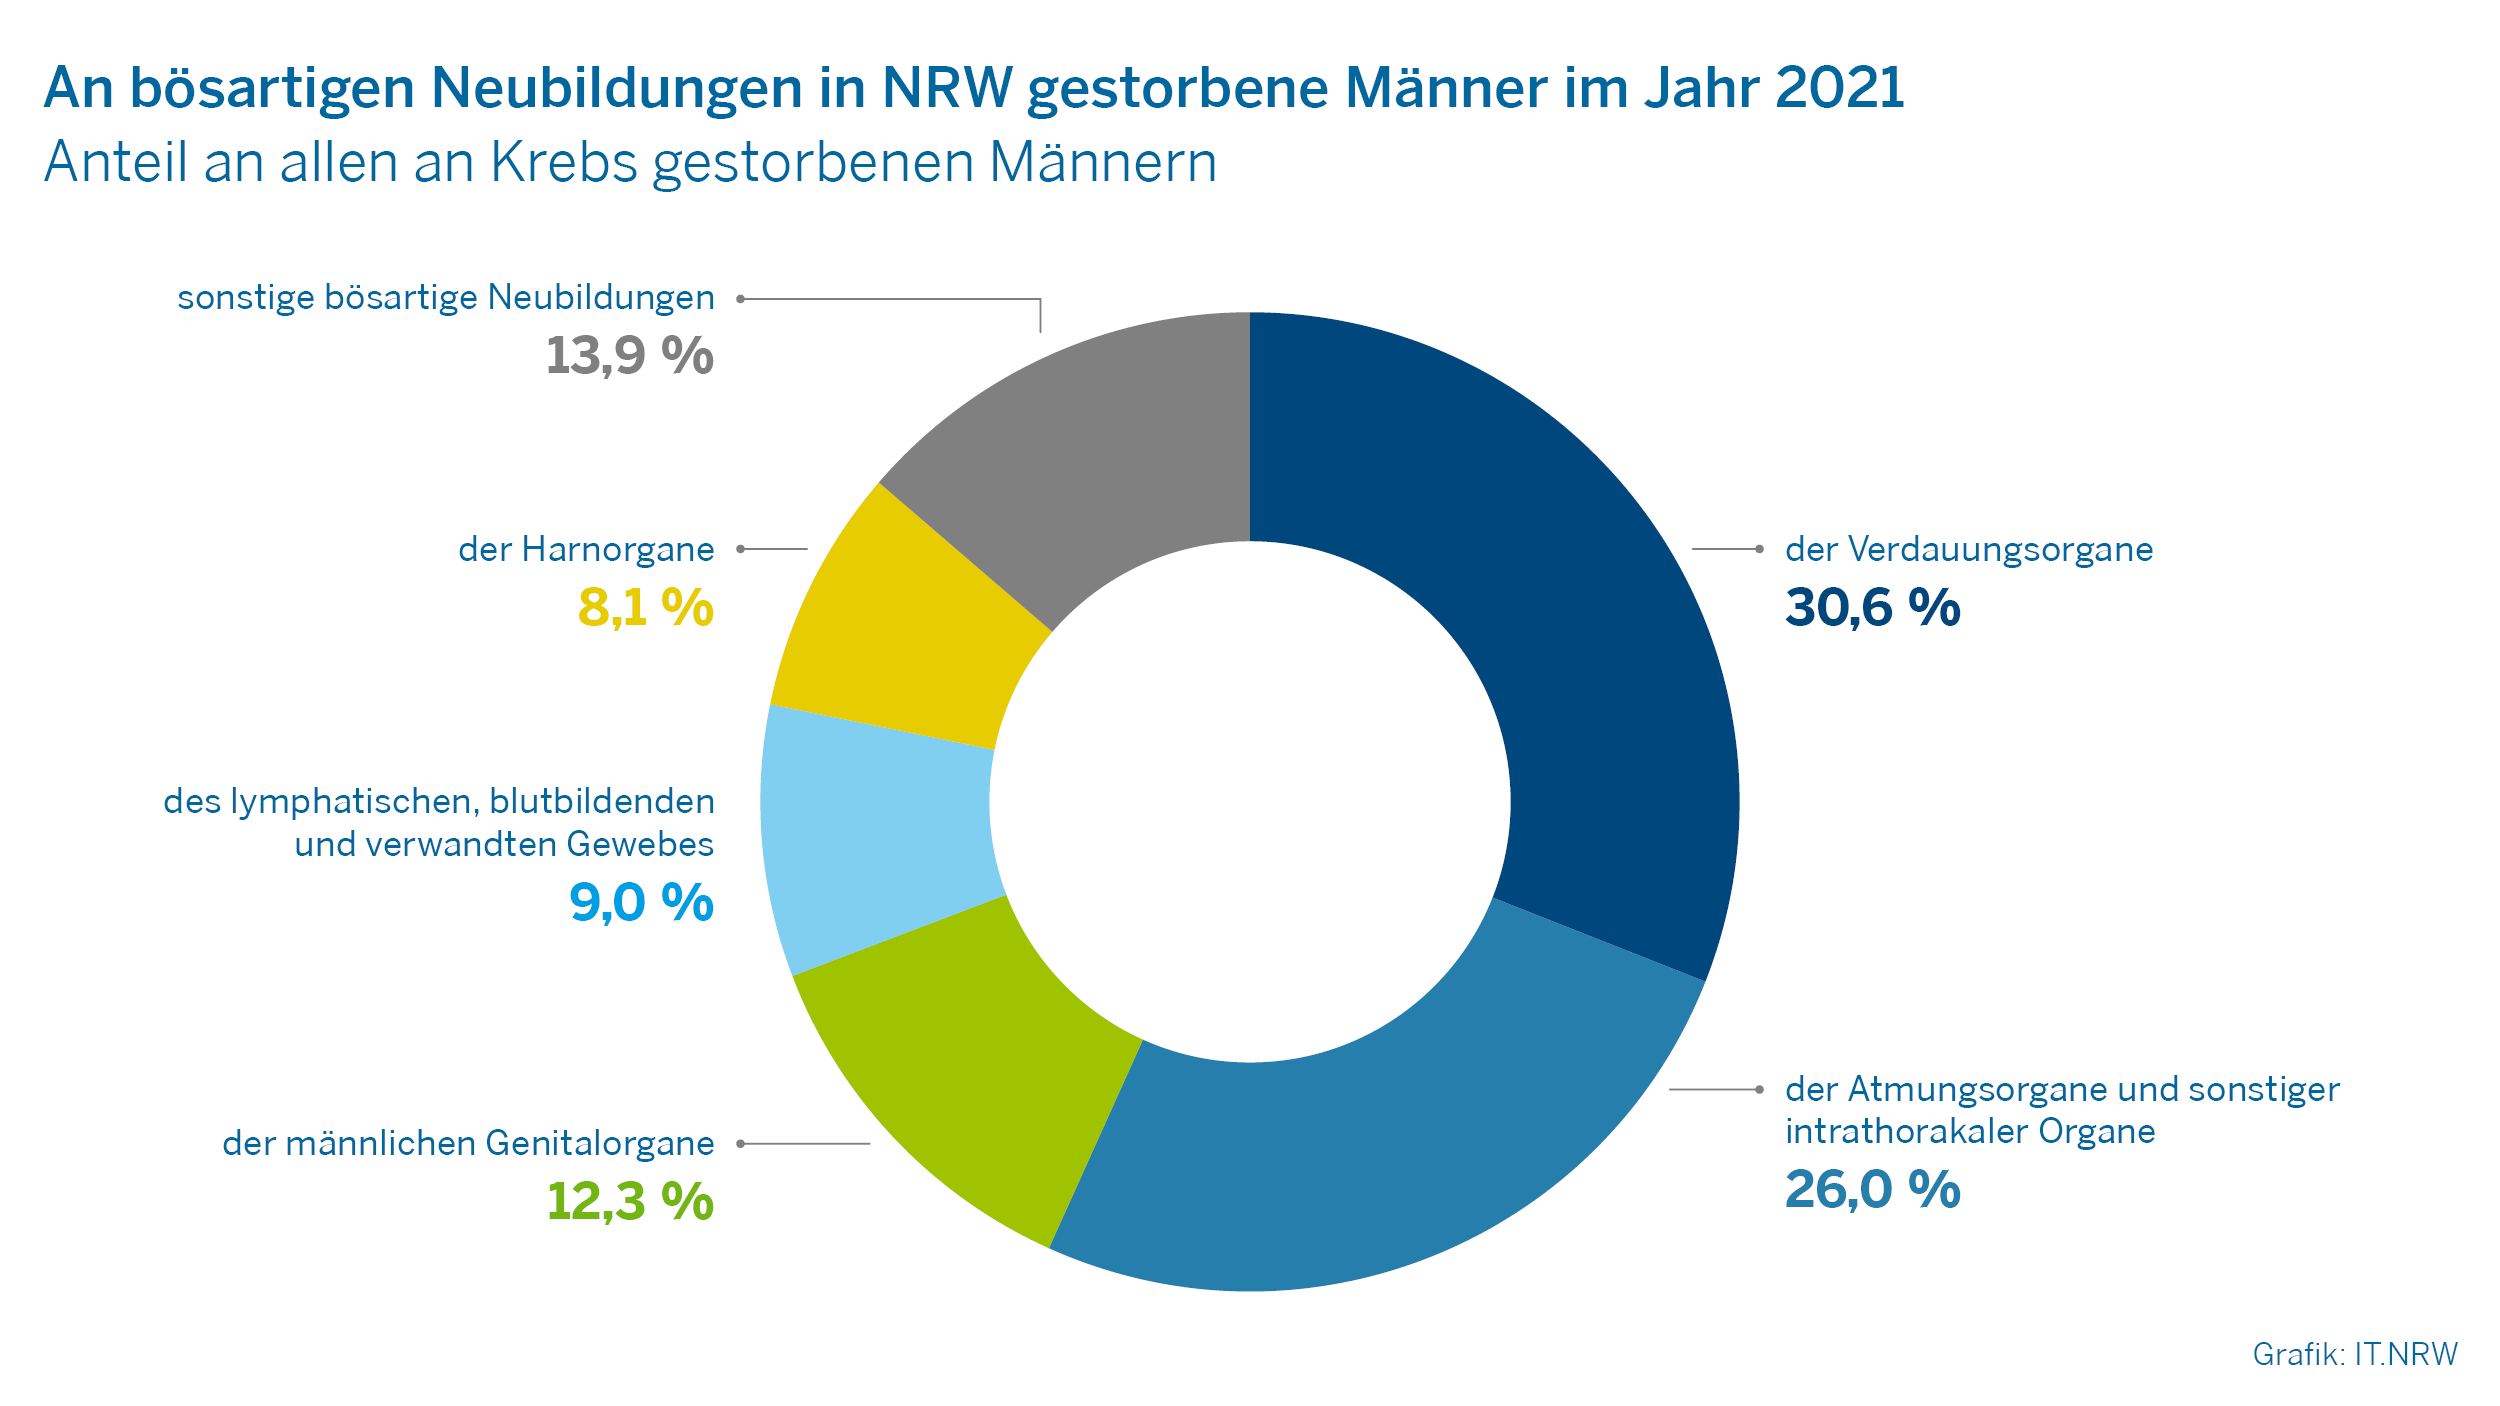 An bösartigen Neubildungen in NRW gestorbene Männer im Jahr 2021